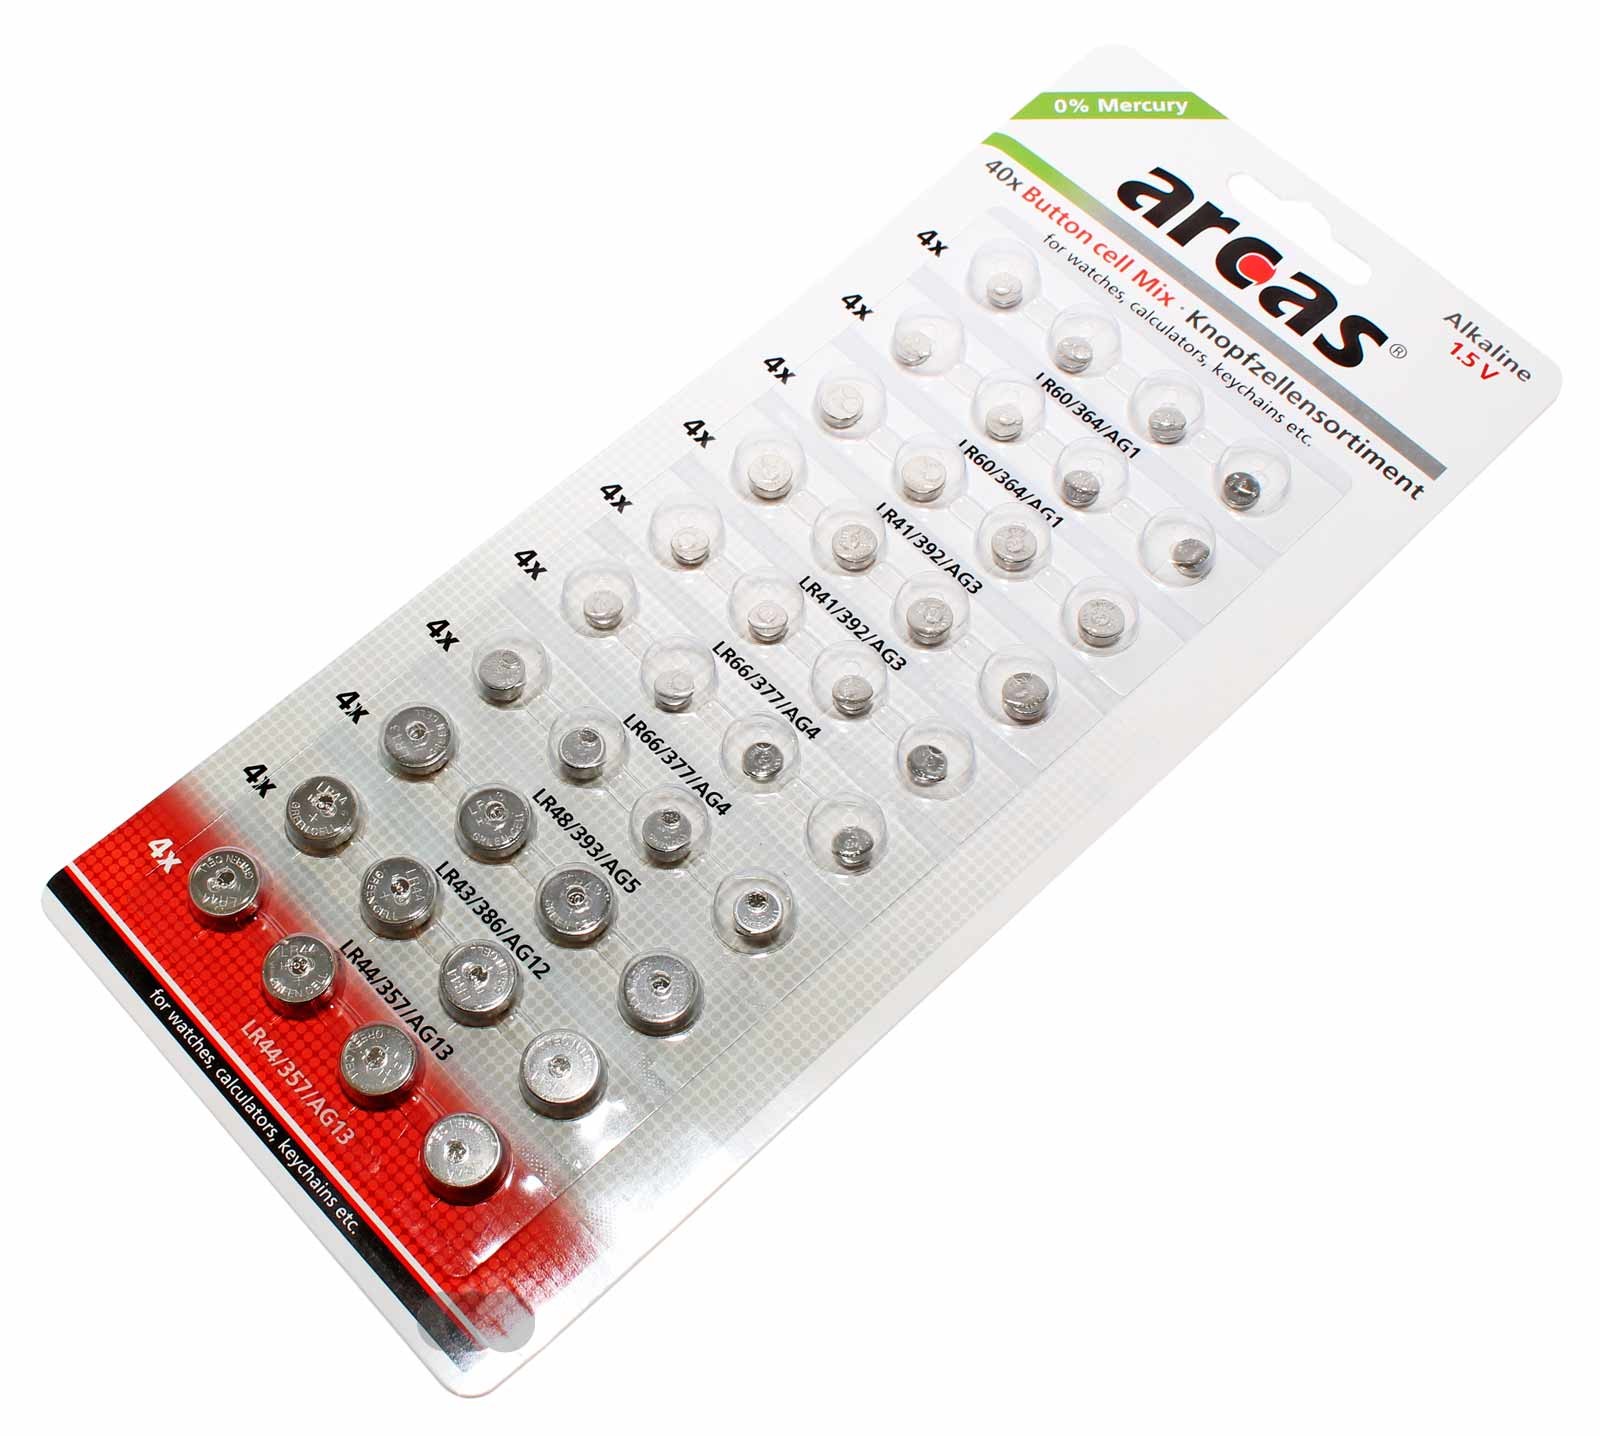 40er Pack Arcas Knopfzellen Batterie Alkaline 1,5V AG1, AG3, AG4, AG5, AG12, AG13, Uhr, Taschenrechner